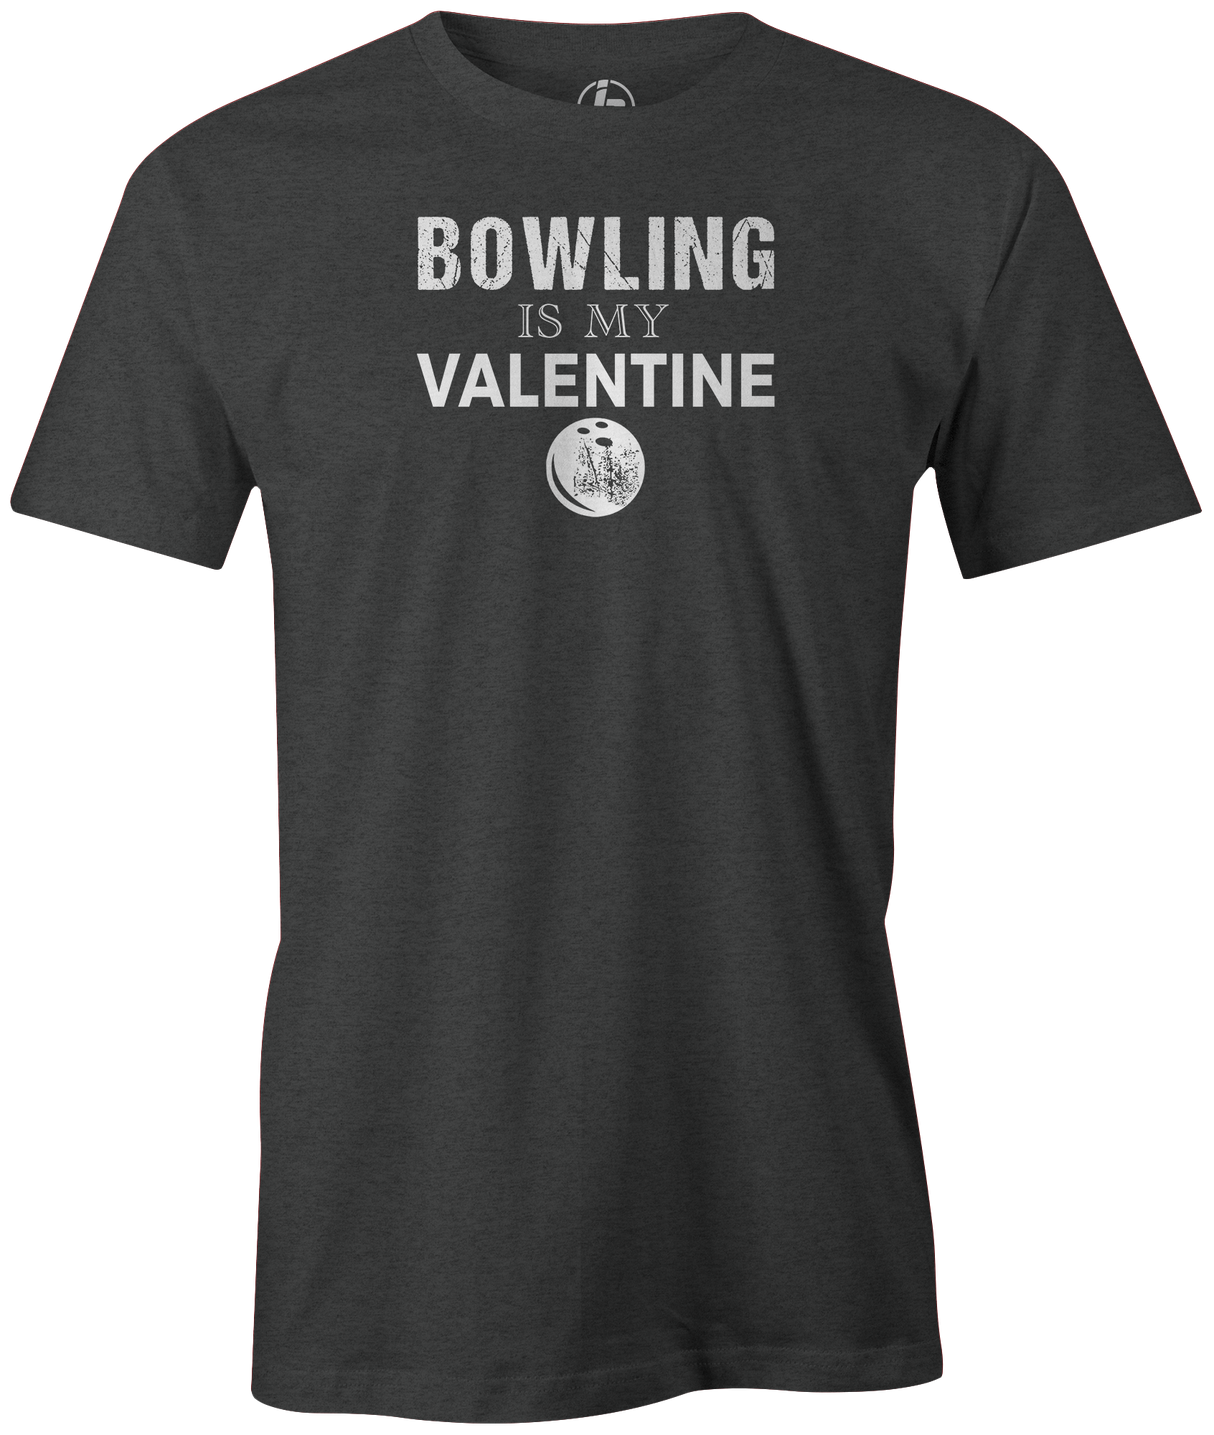 bowling-is-my-valentine-bowler-tee-shirt-february-14th-bowl-tshirt